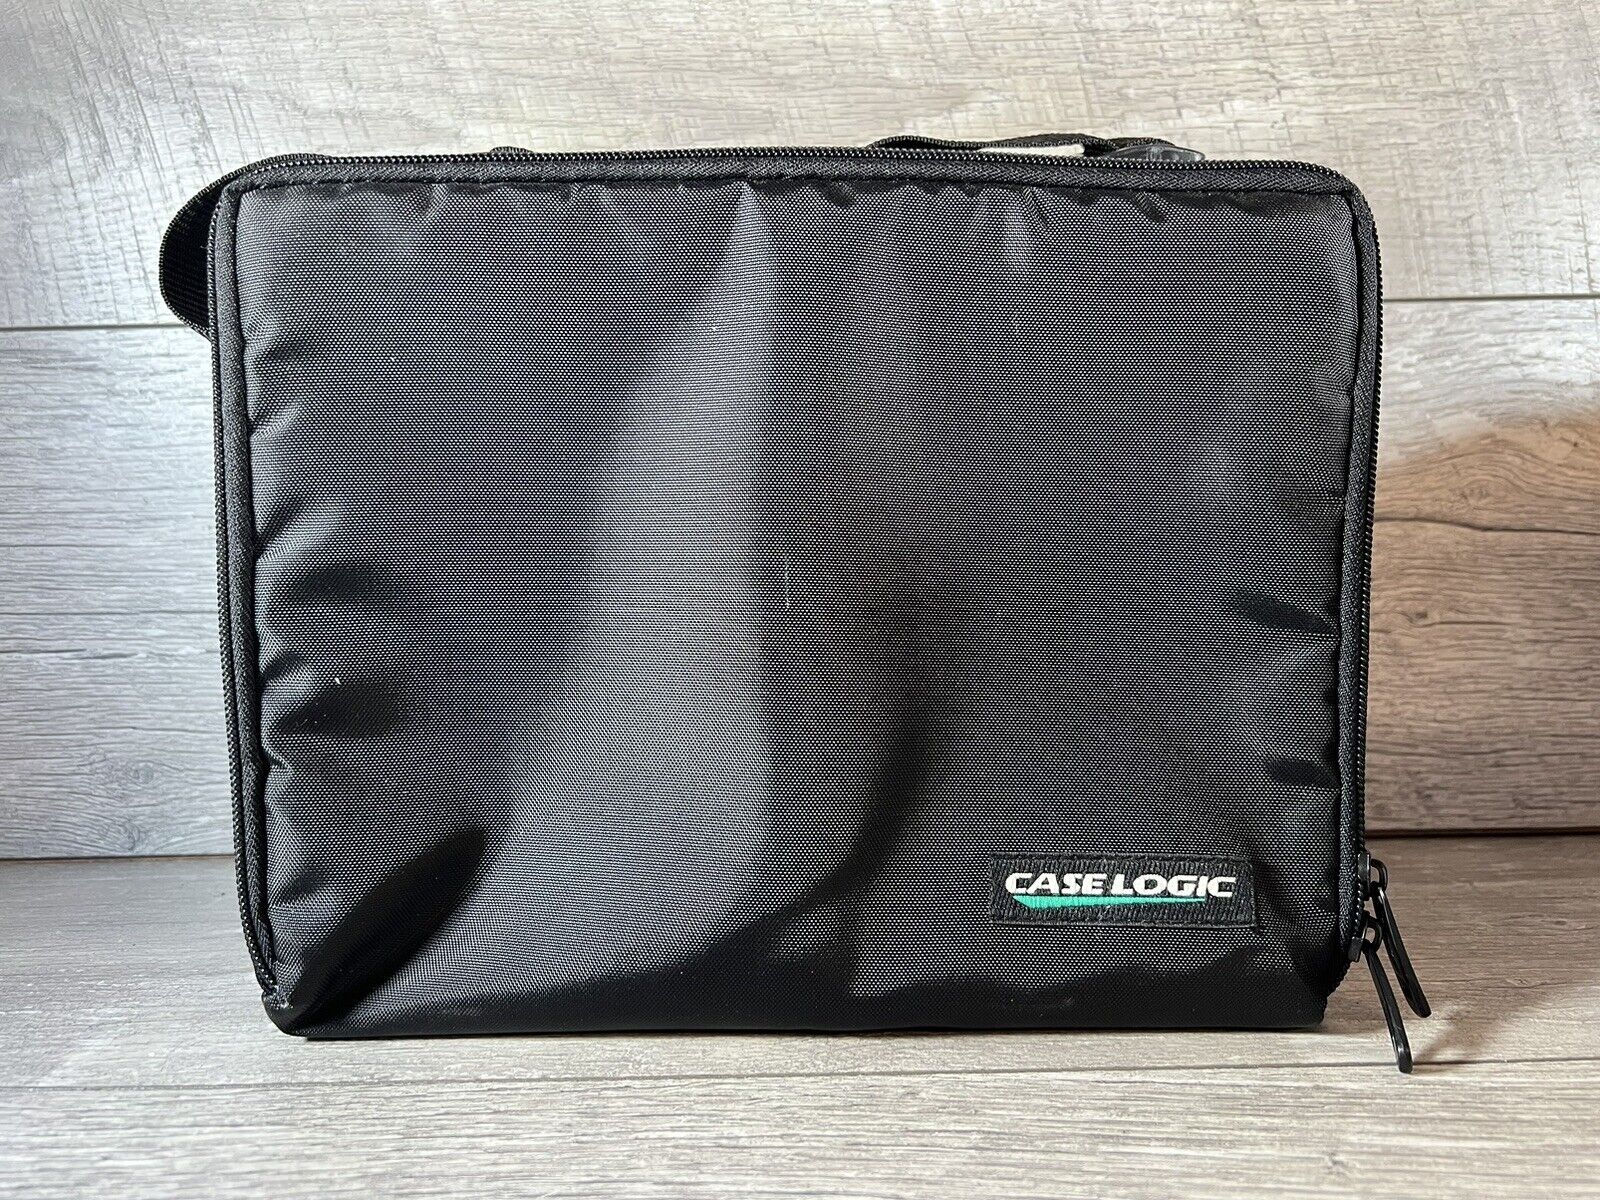 Case Logic Black 30 CD / Disc Holder Travel Carrying Case DJ Carry Bag w/ Strap